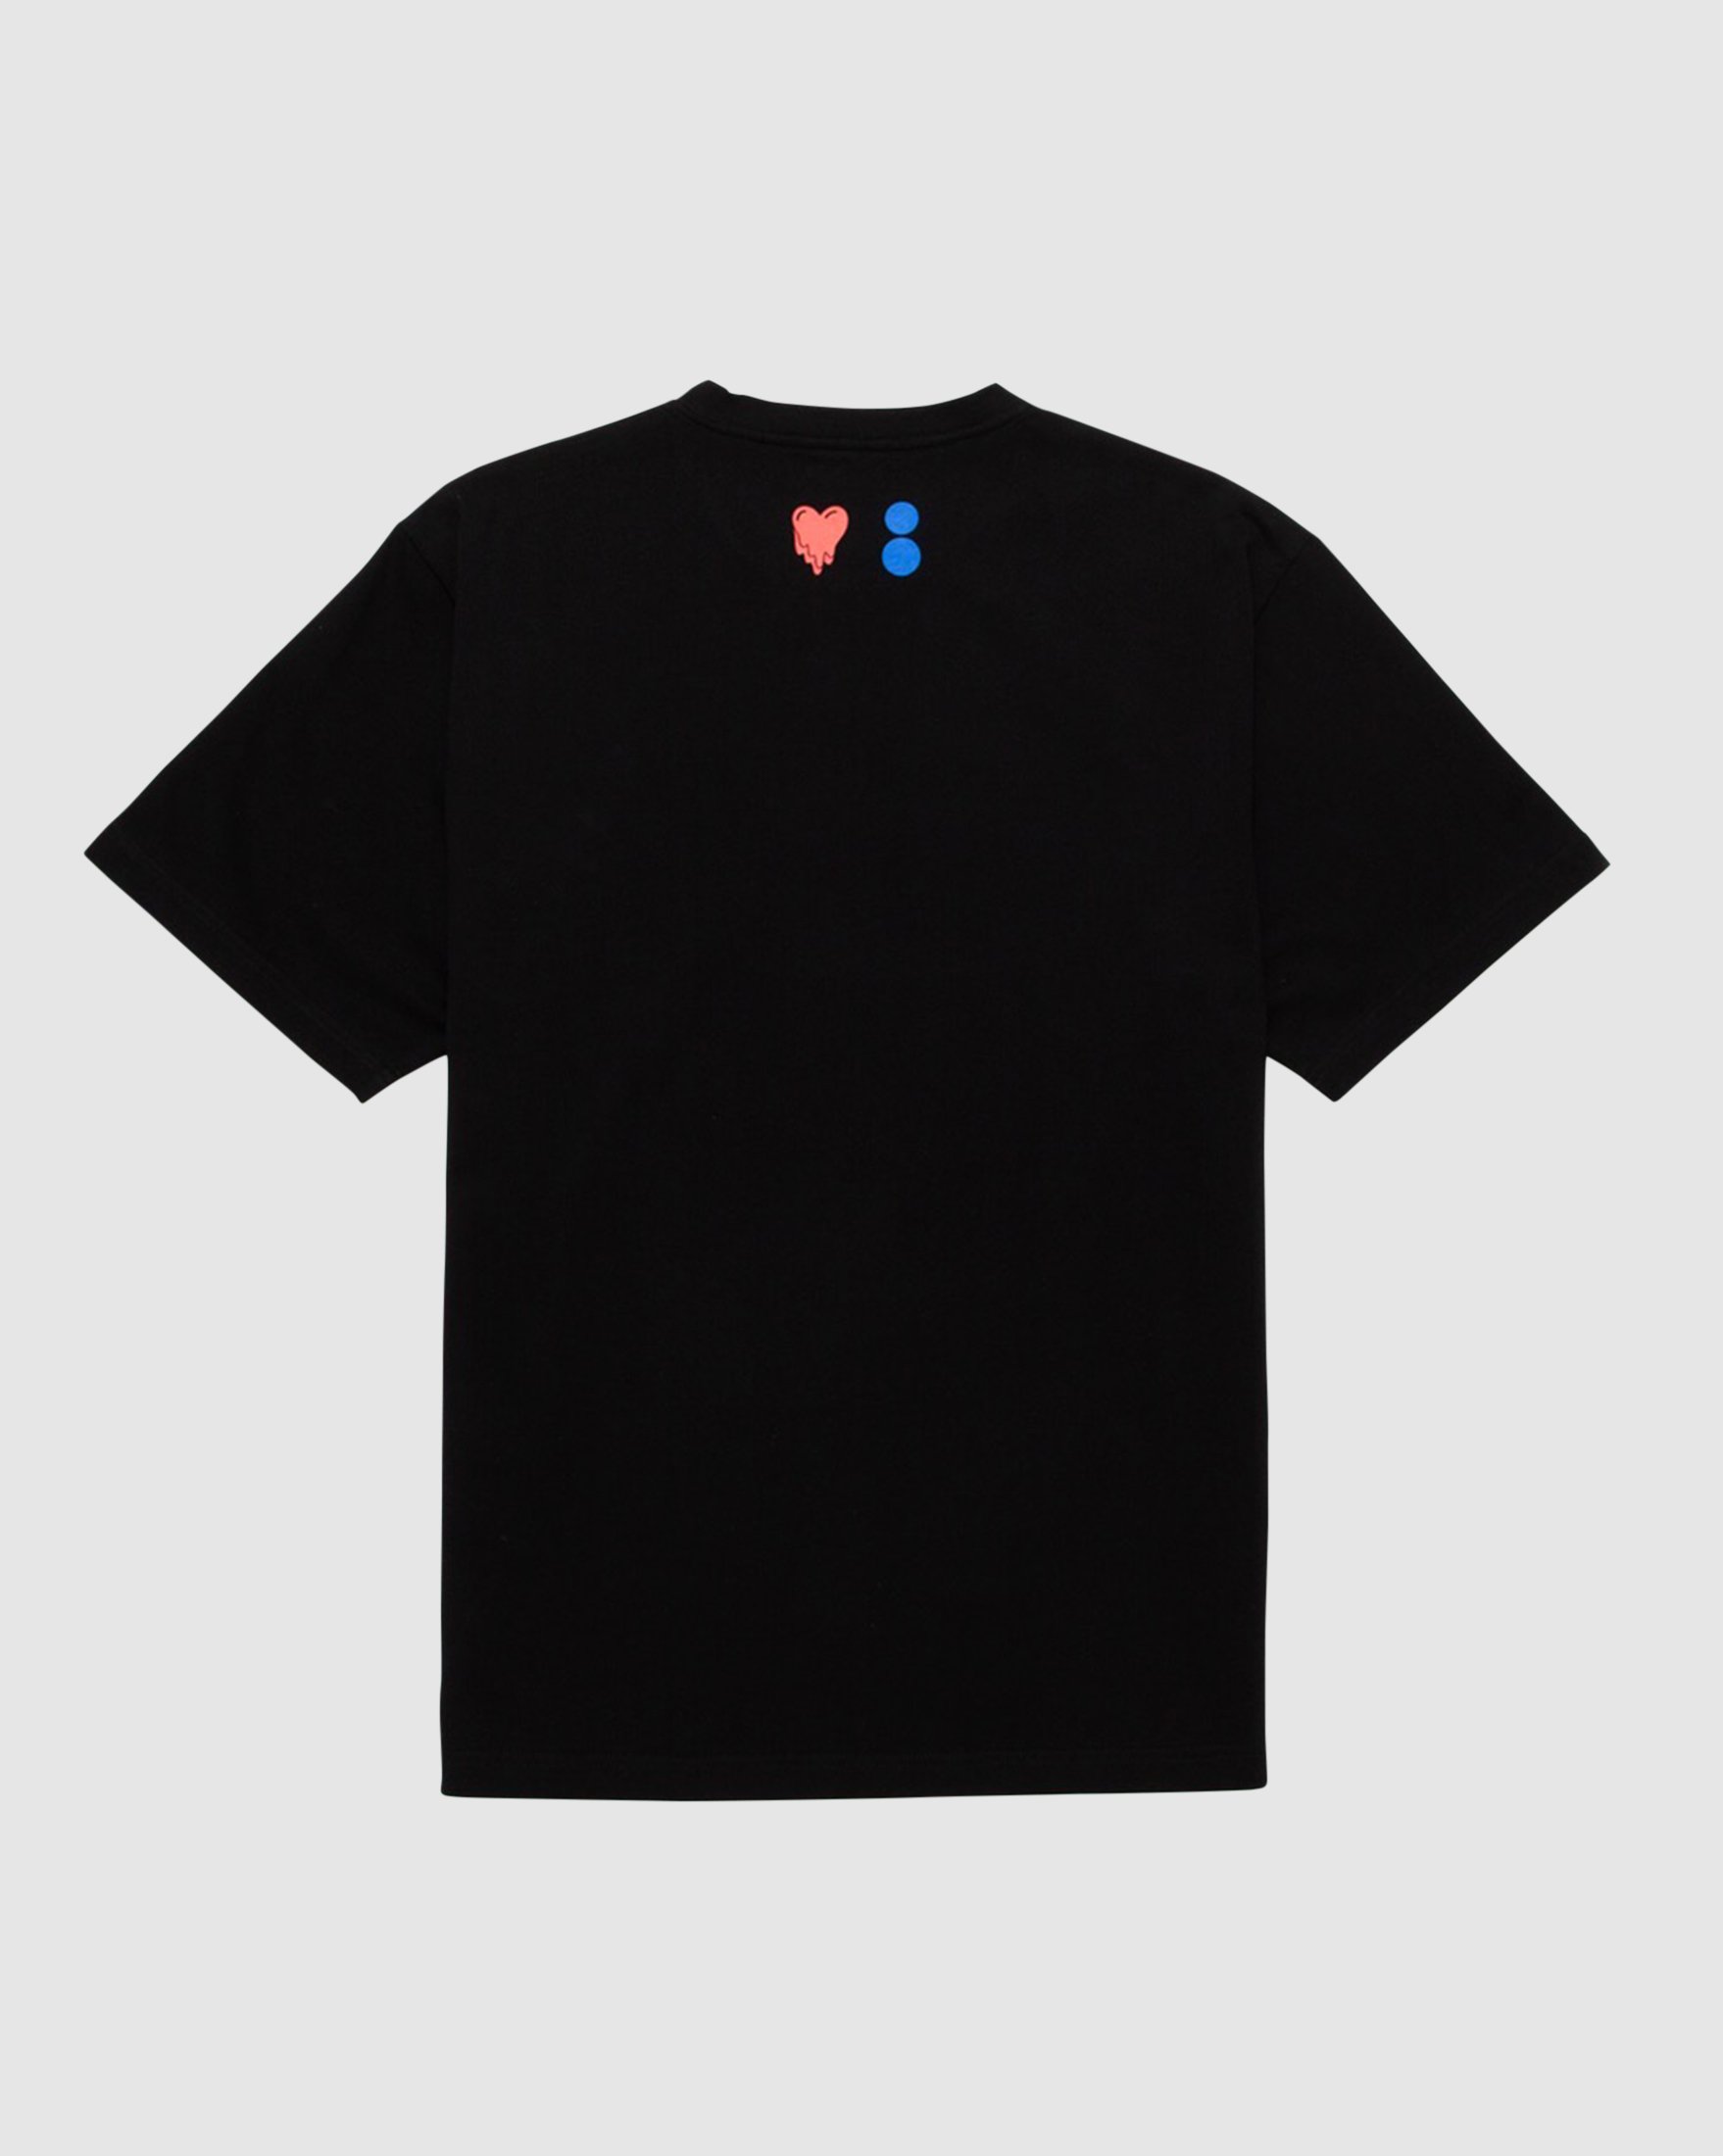 Colette Mon Amour - EU Black Heart T-Shirt - Clothing - Black - Image 2